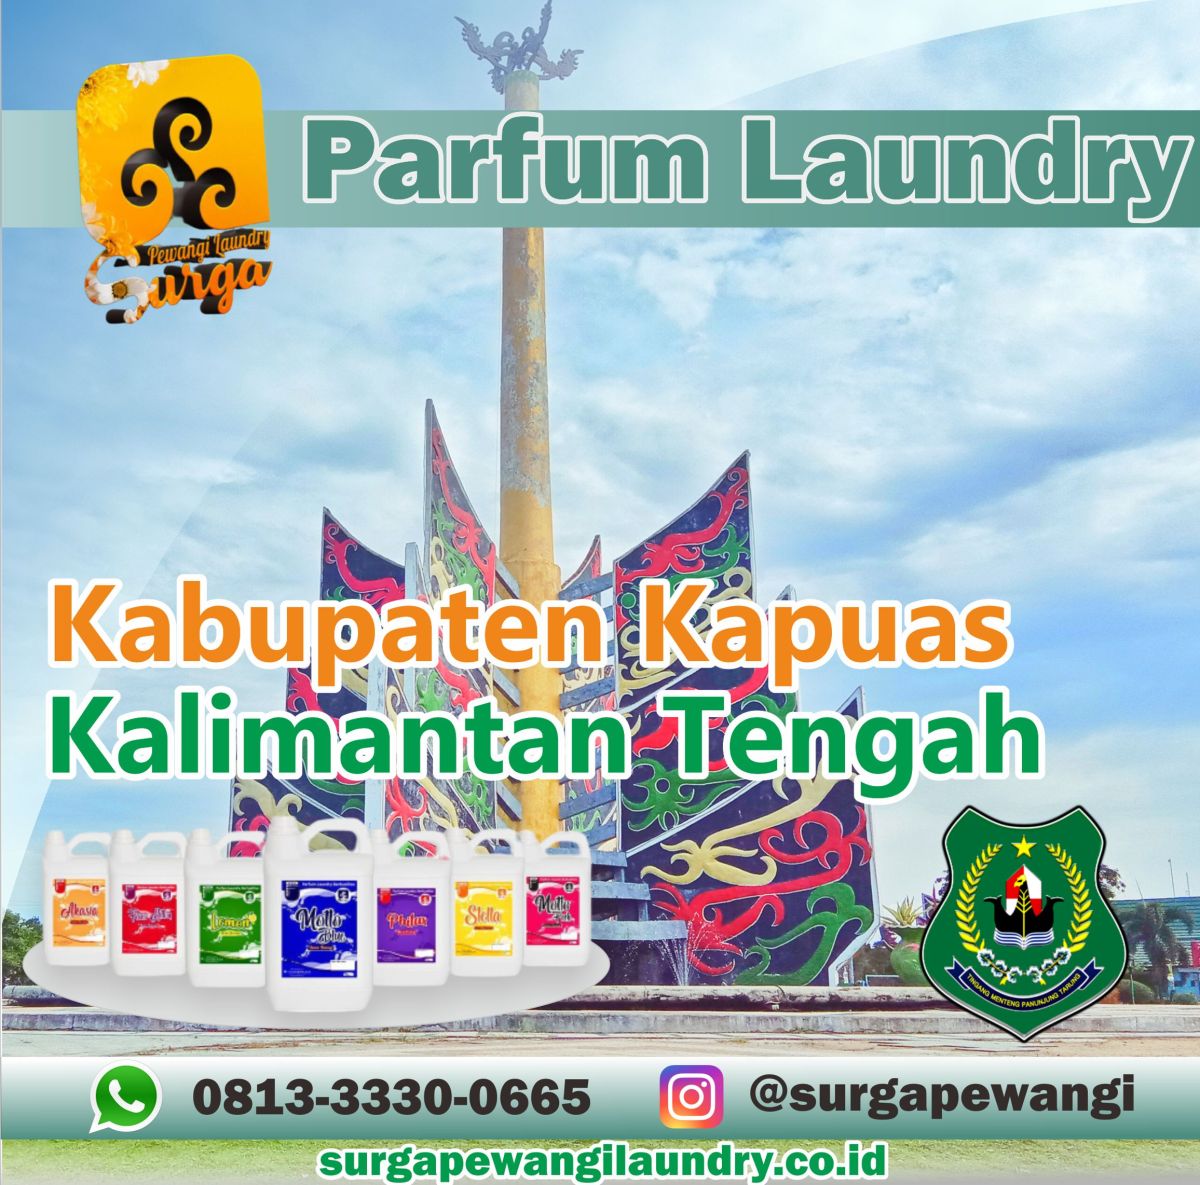 Parfum Laundry Kabupaten Kapuas, Kalimantan Tengah